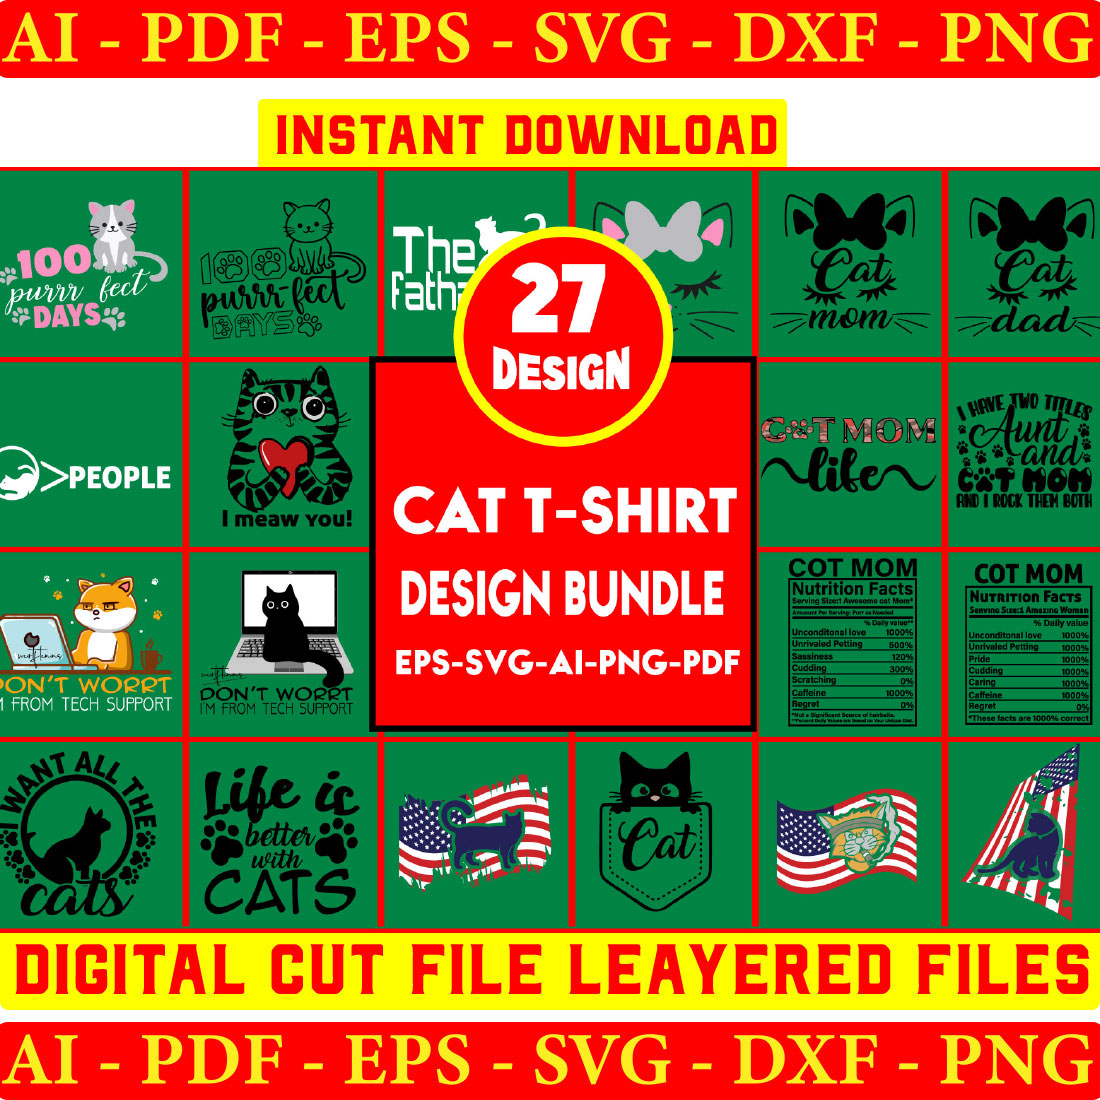 Cat T-shirt Design Bundle cover image.